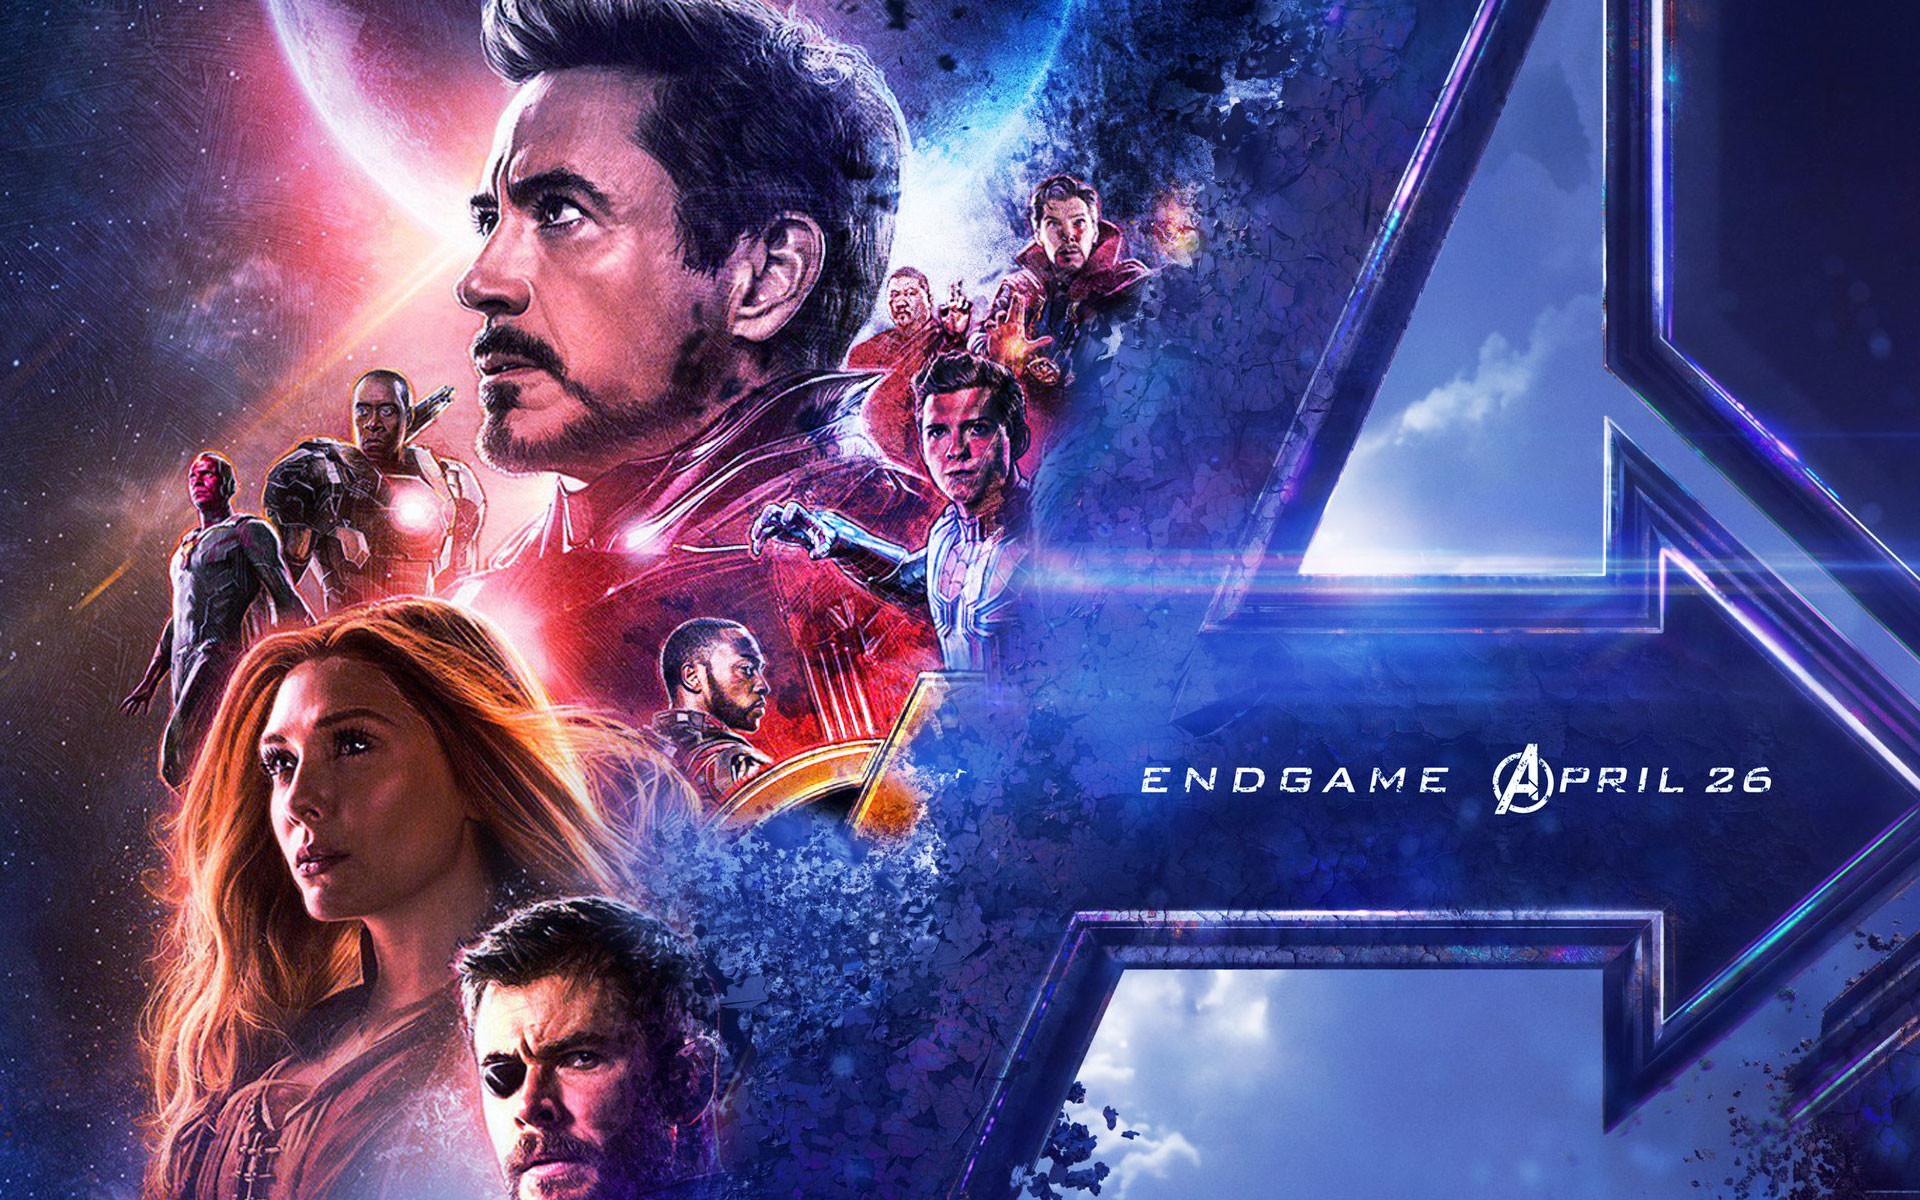 Avengers 2 Wallpaper